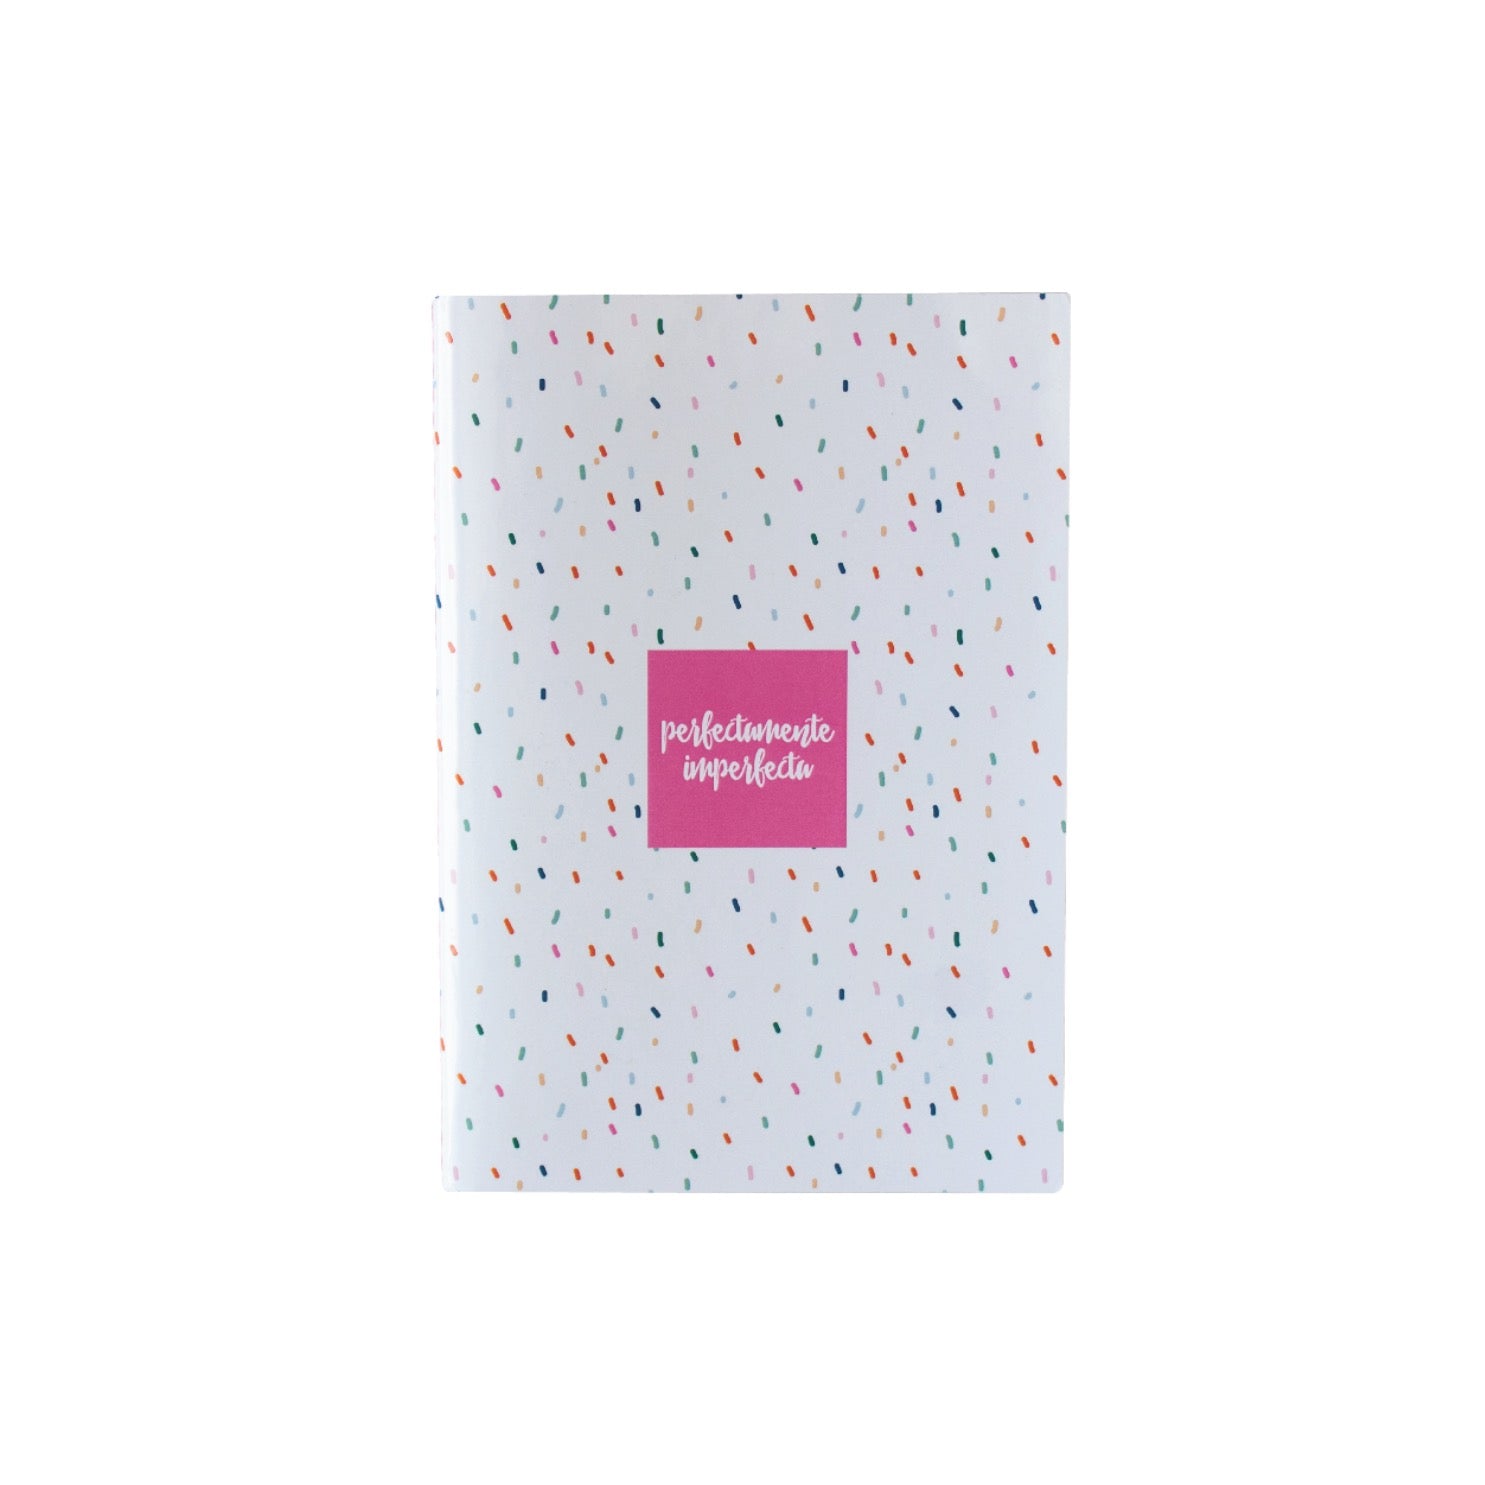 Composition notebooks con portada suave y mensaje de inspiradores